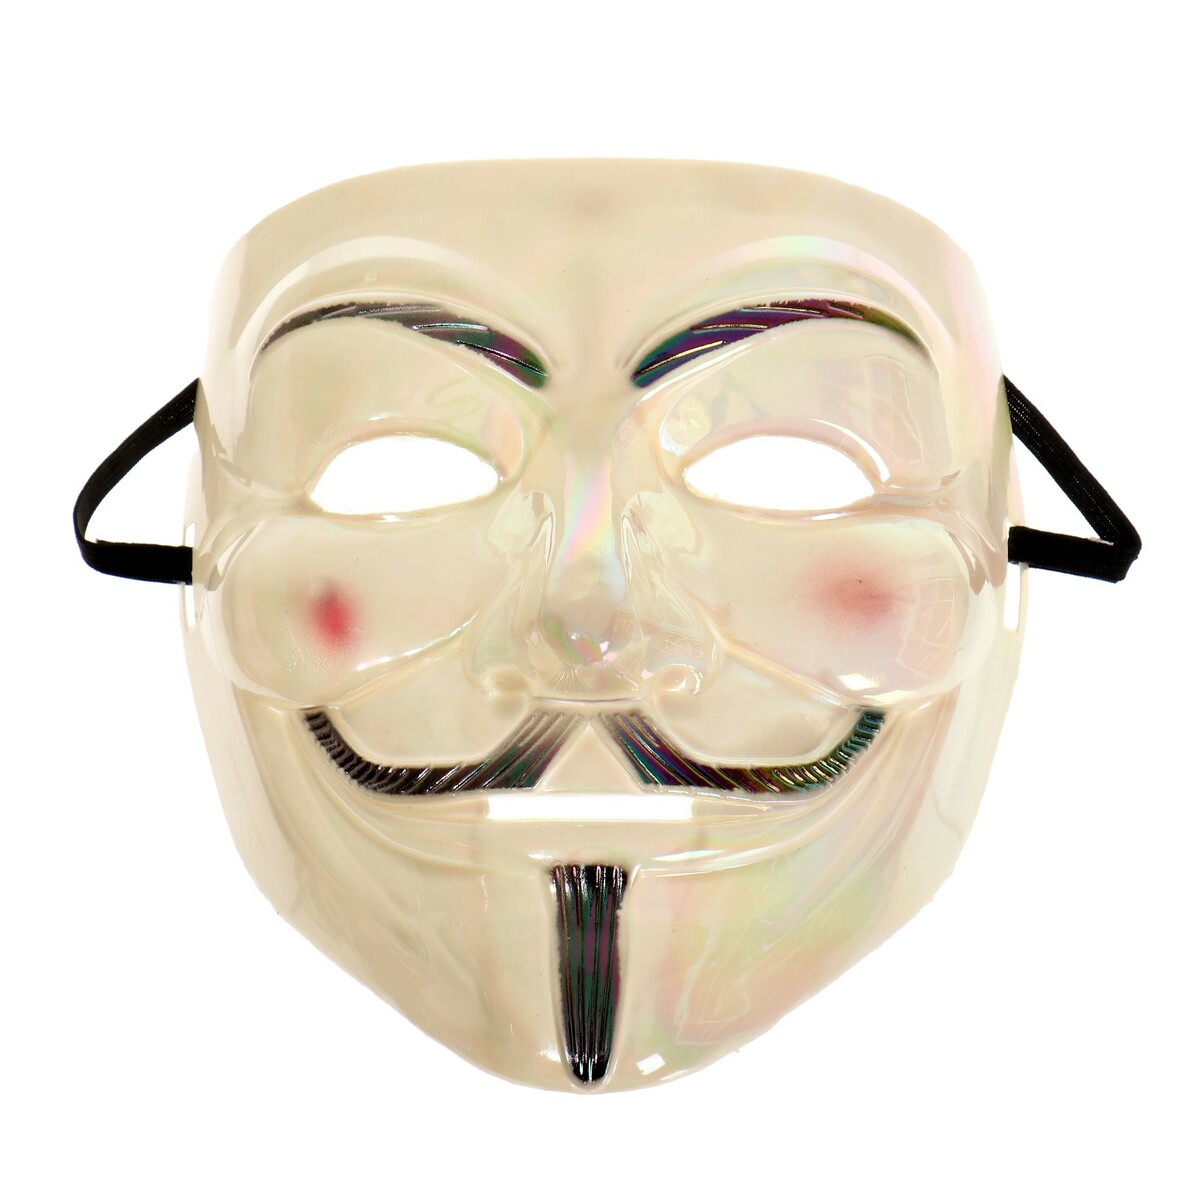 Карнавальная маска попытки макса теллера